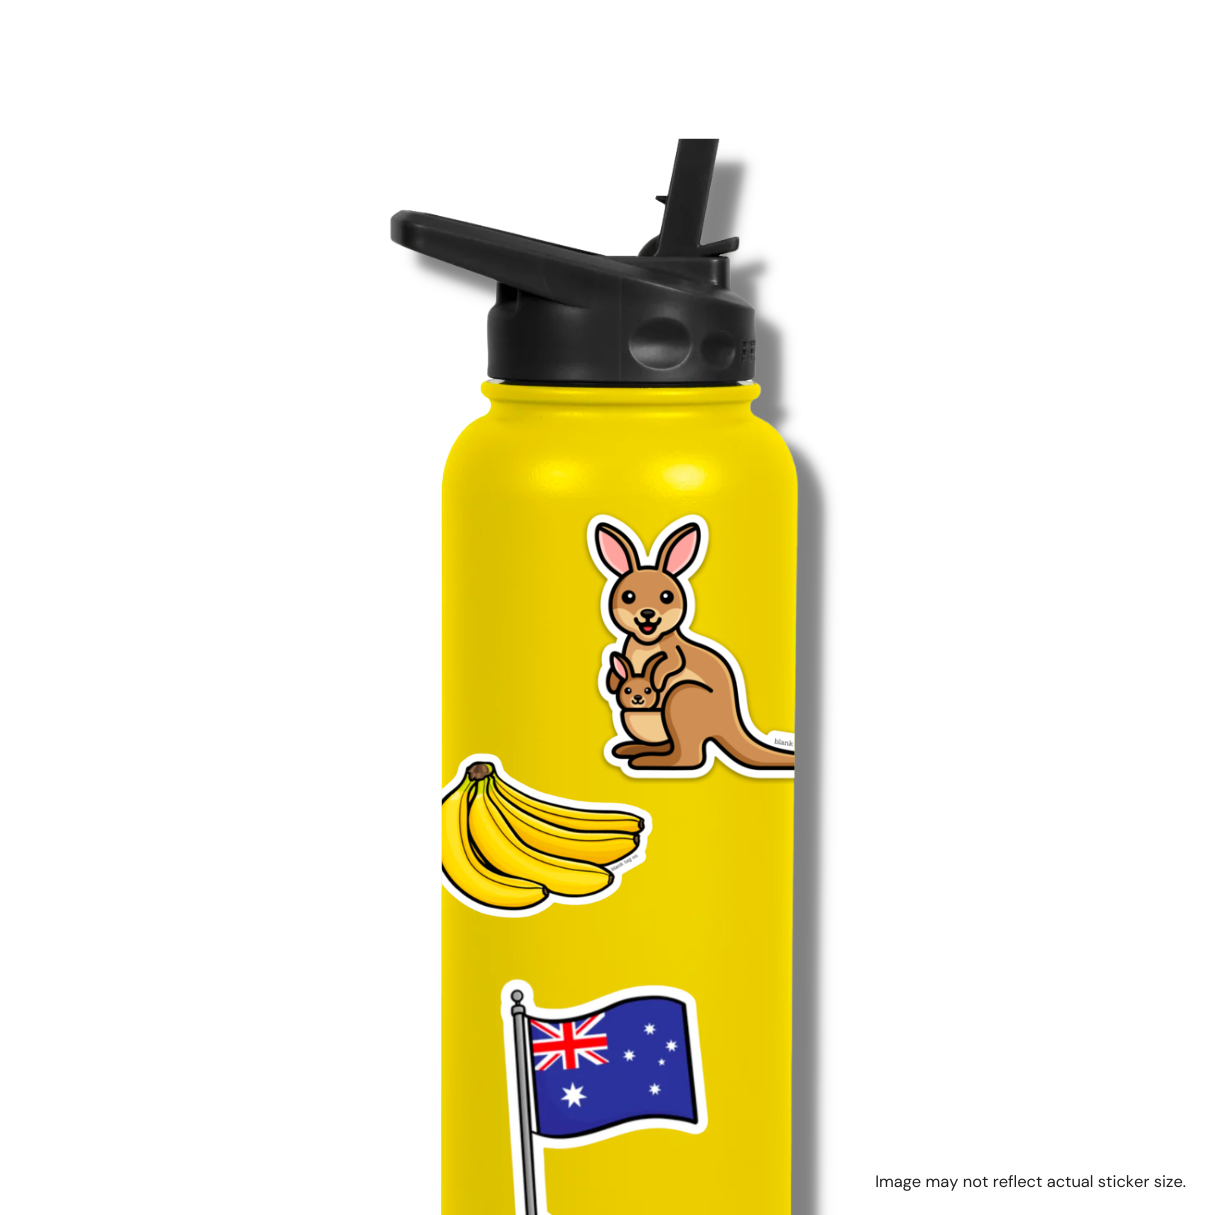 The Australia Flag Sticker